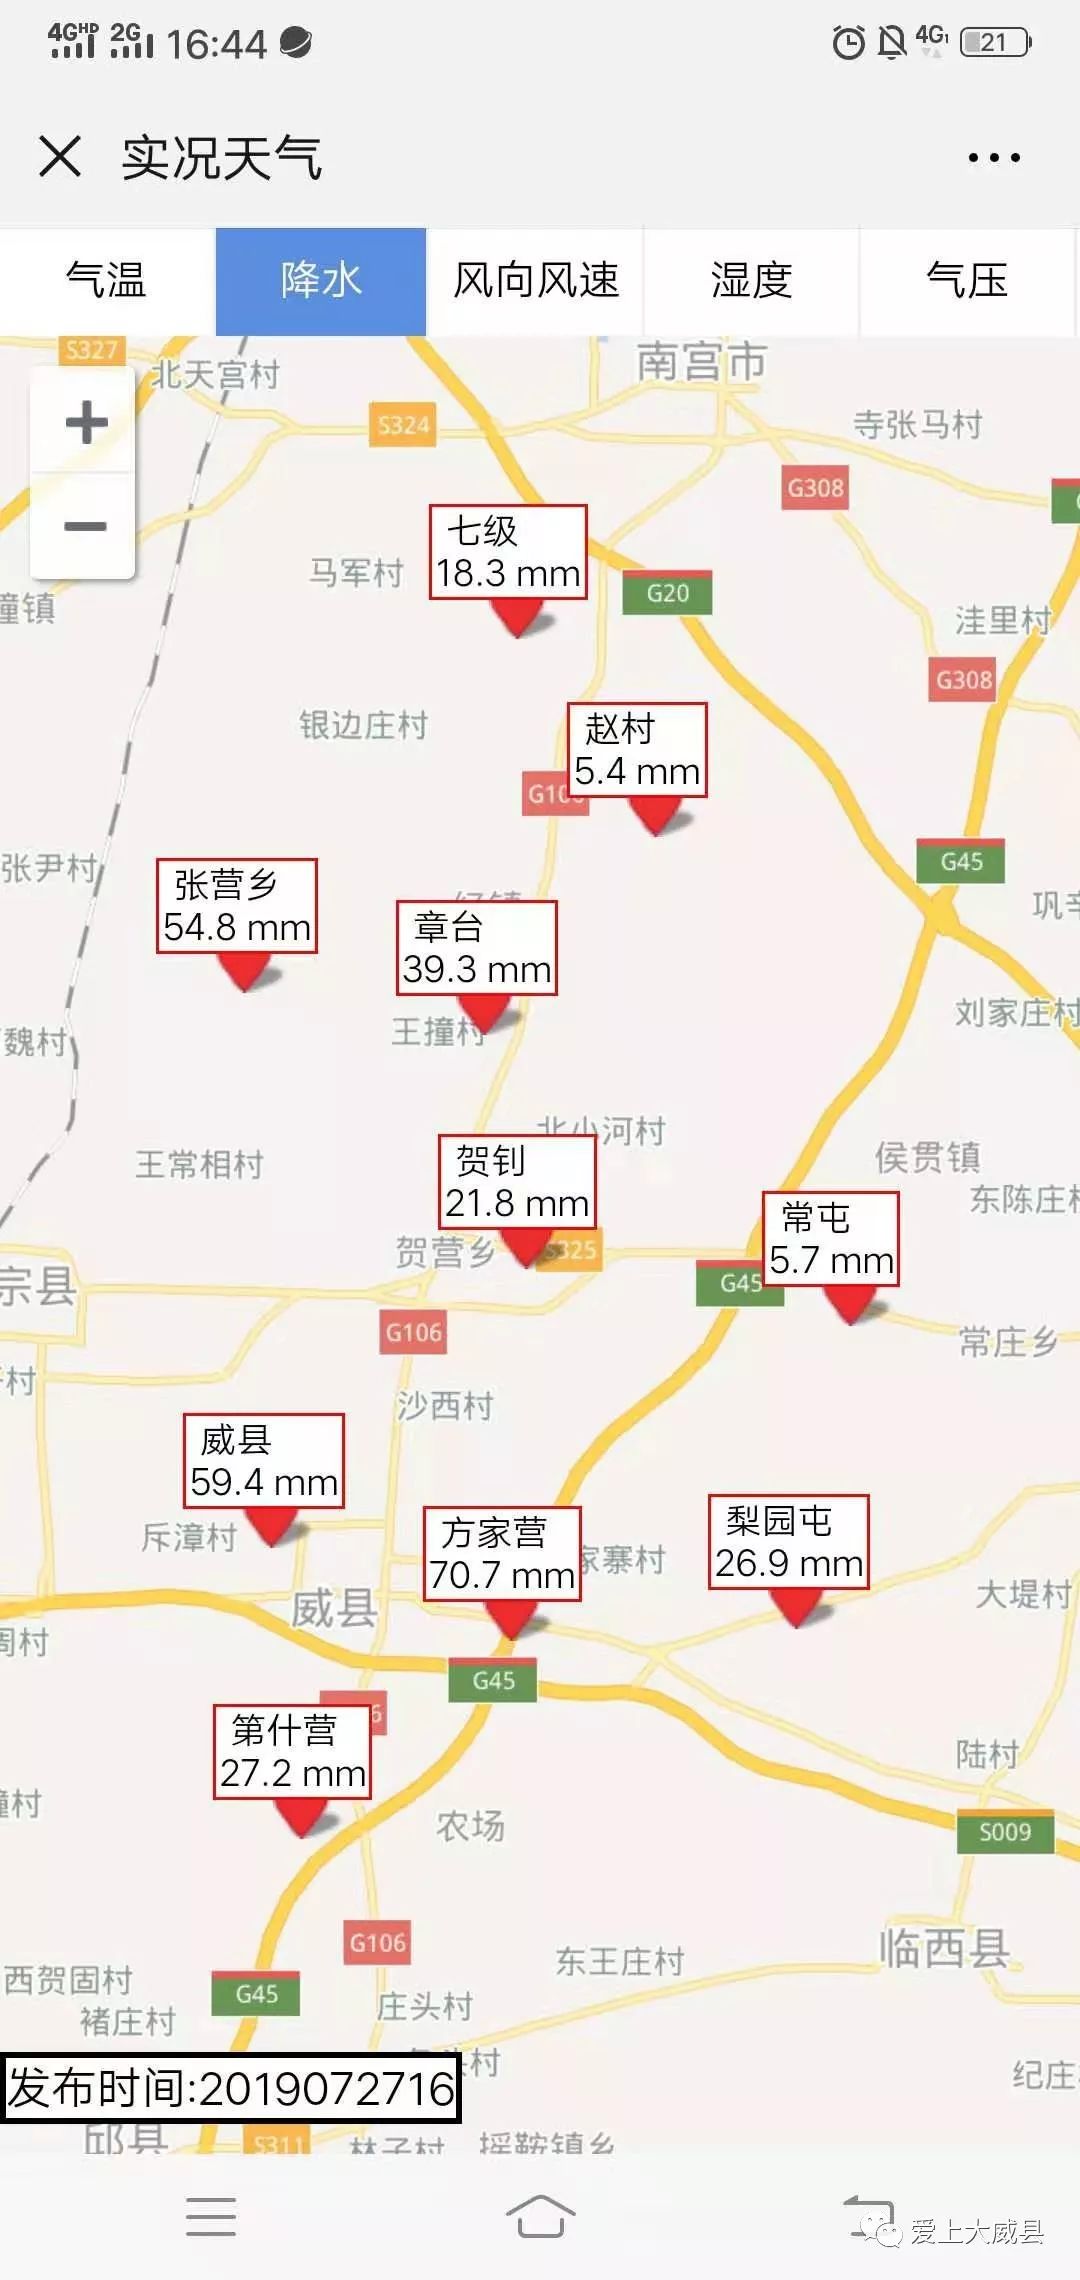 河北威县地图全图图片